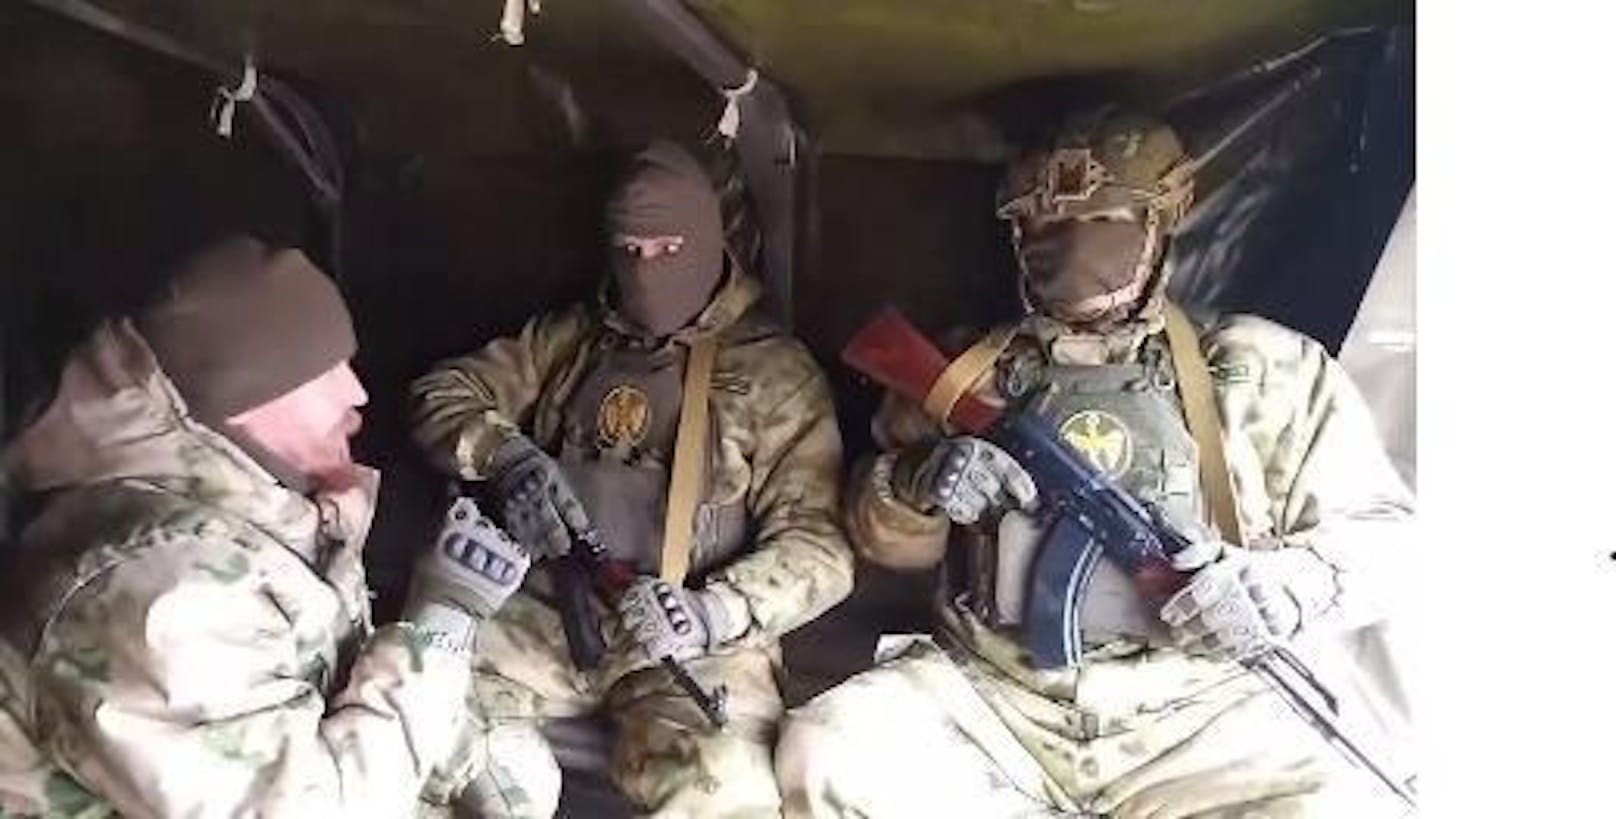 Aufnahmen der russische Nachrichtenagentur Ria Nowosti stellen zwei serbische Freiwillige vor, die angeblich an einem Wagner-Waffentraining in der Ukraine teilnehmen.